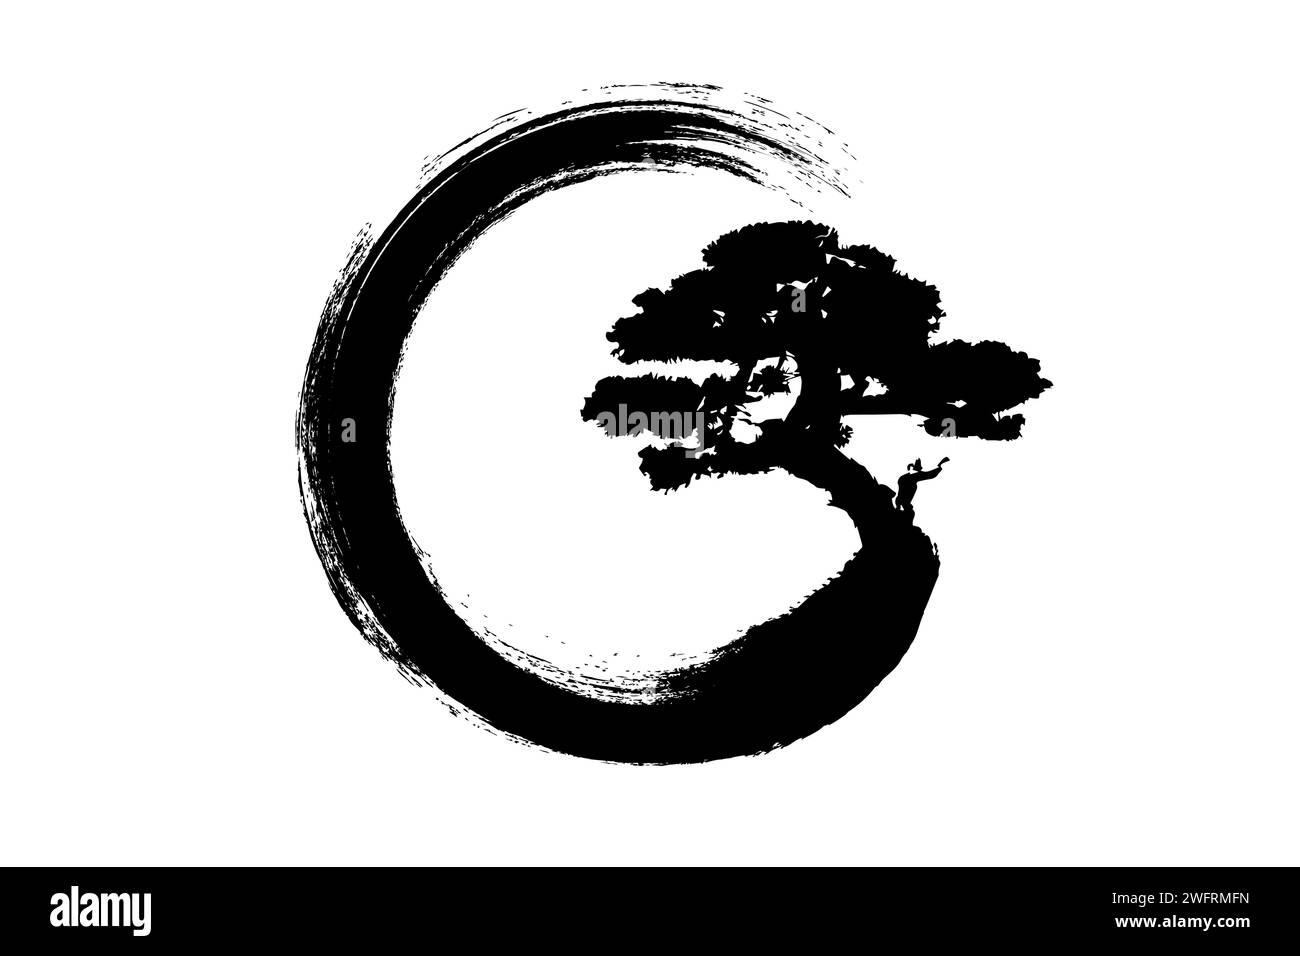 Enso Zen Circle und Bonsai Tree, handgezeichnet mit schwarzer Tinte im traditionellen japanischen Stil sumi-e, Vektor-Logo-Design im Pinselstil, isoliert Stock Vektor